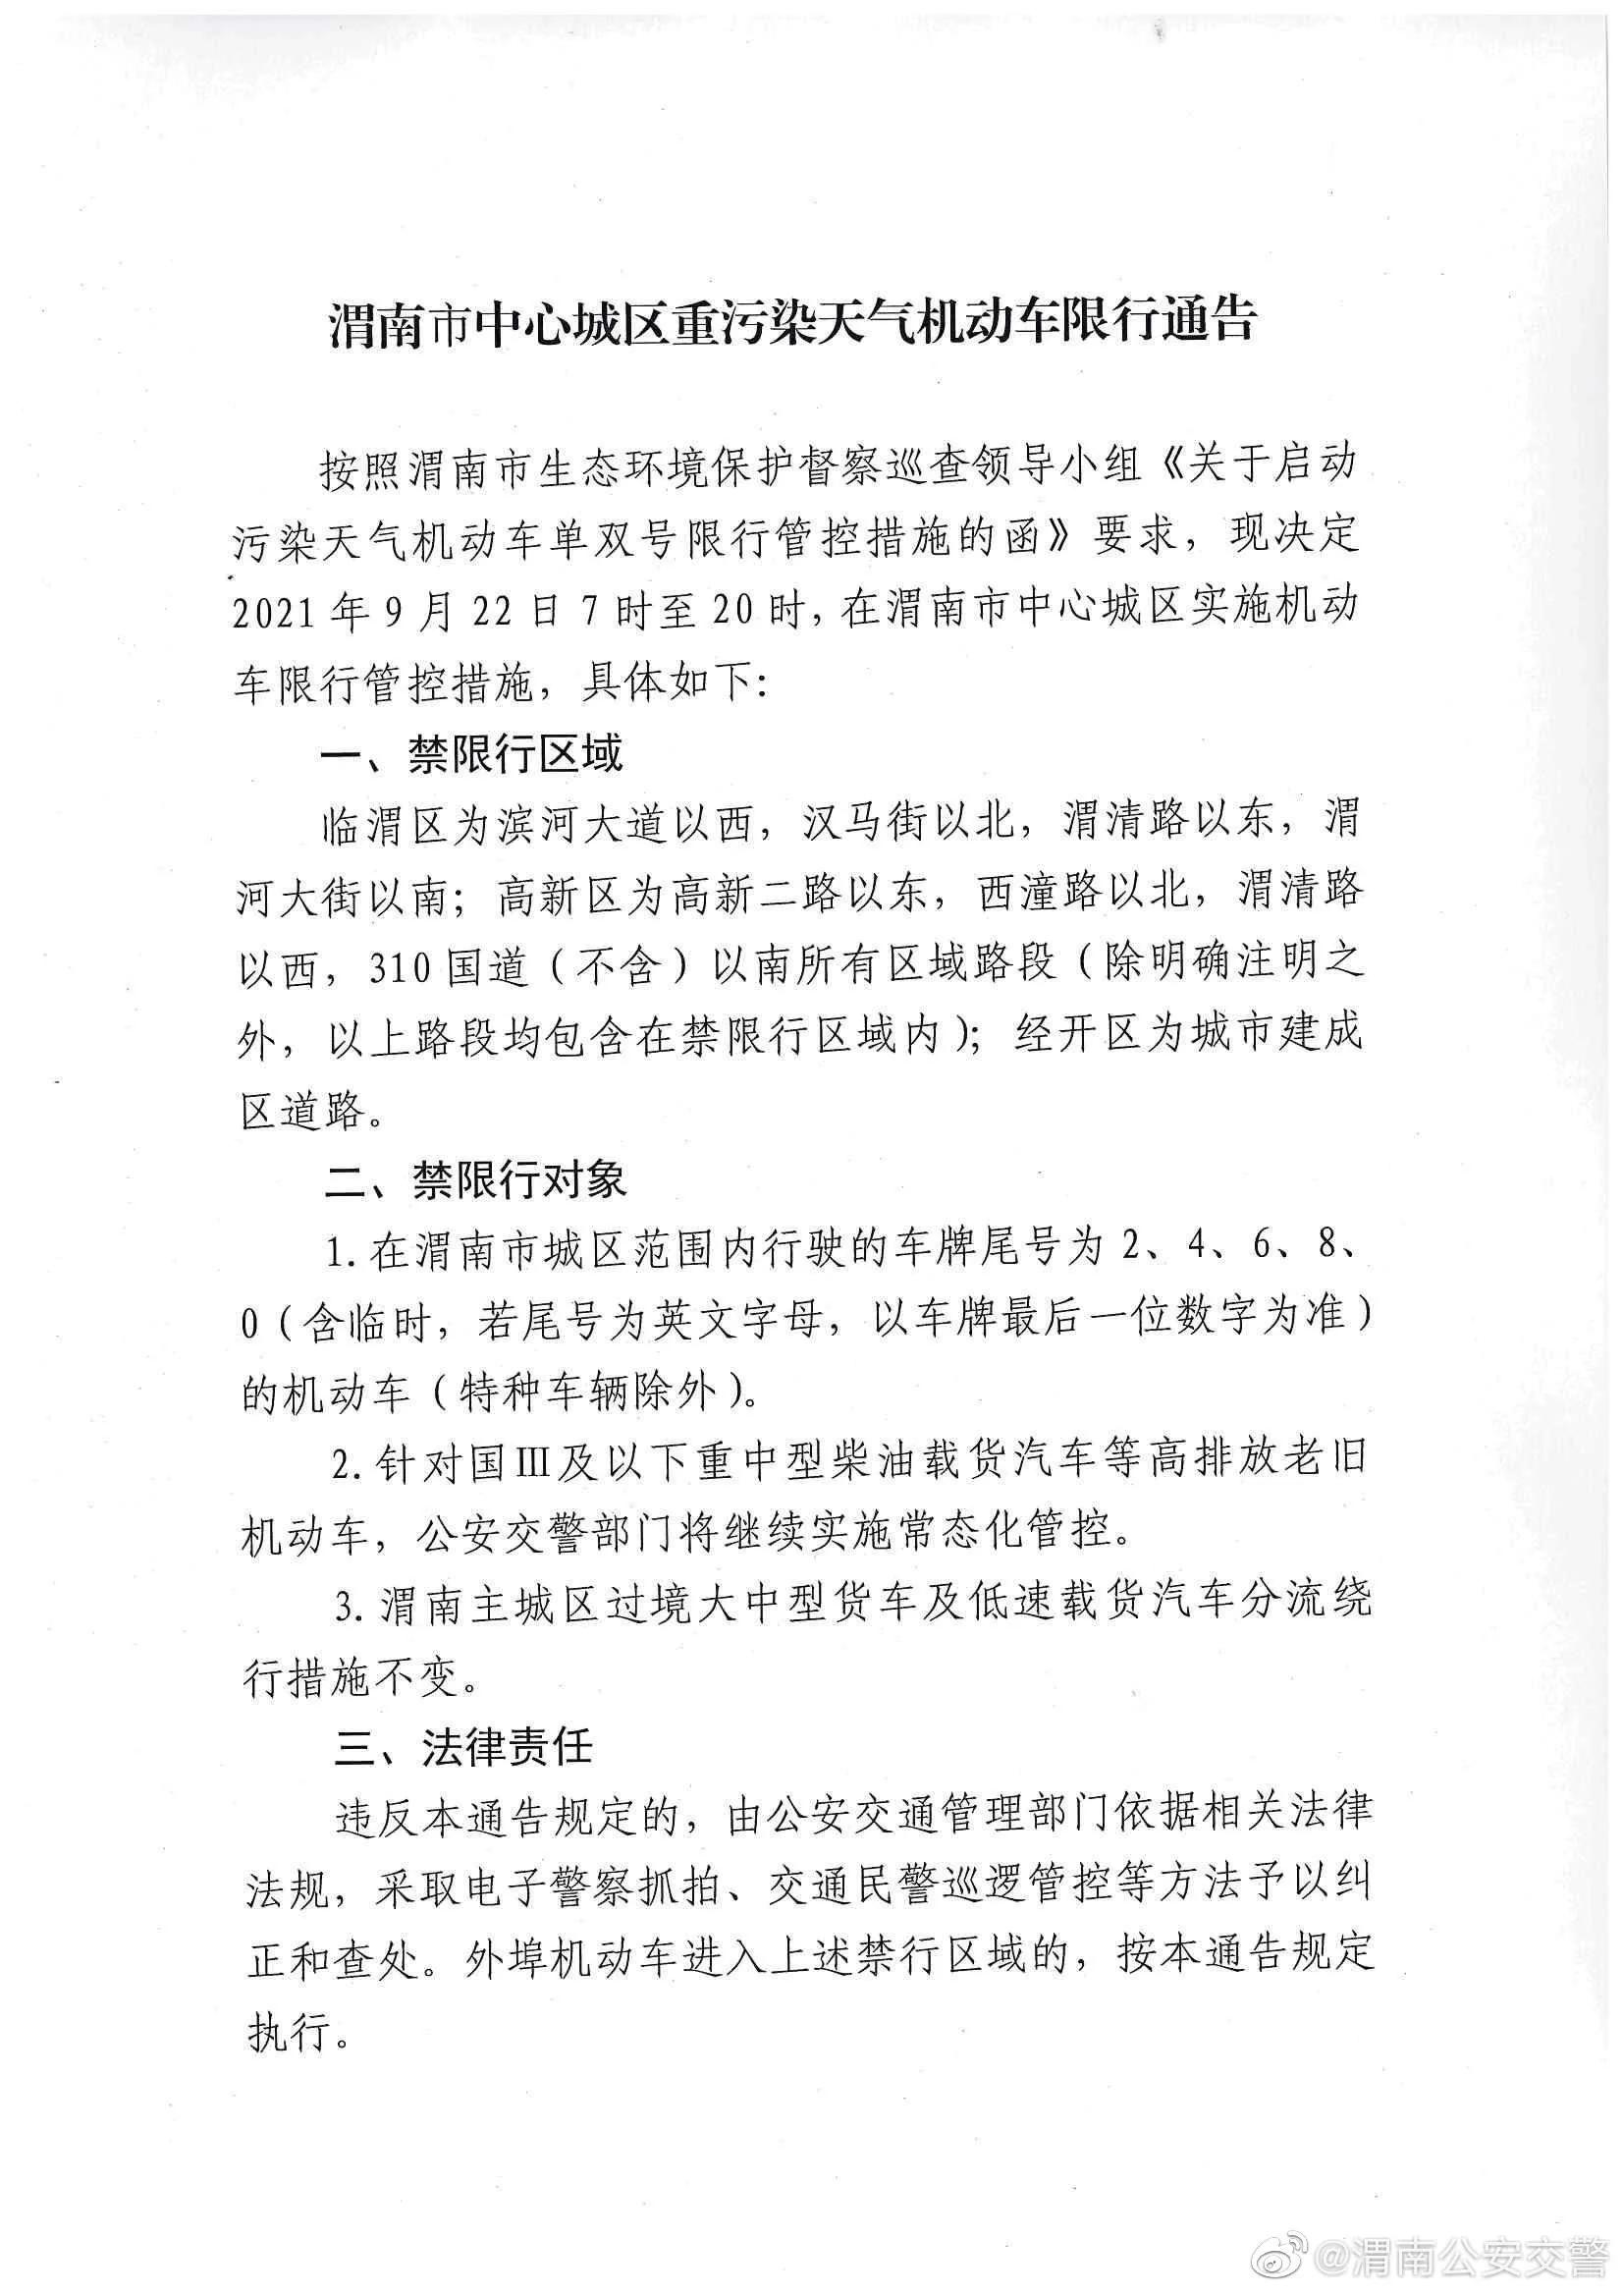 9月22日渭南城区将限行双数尾号机动车